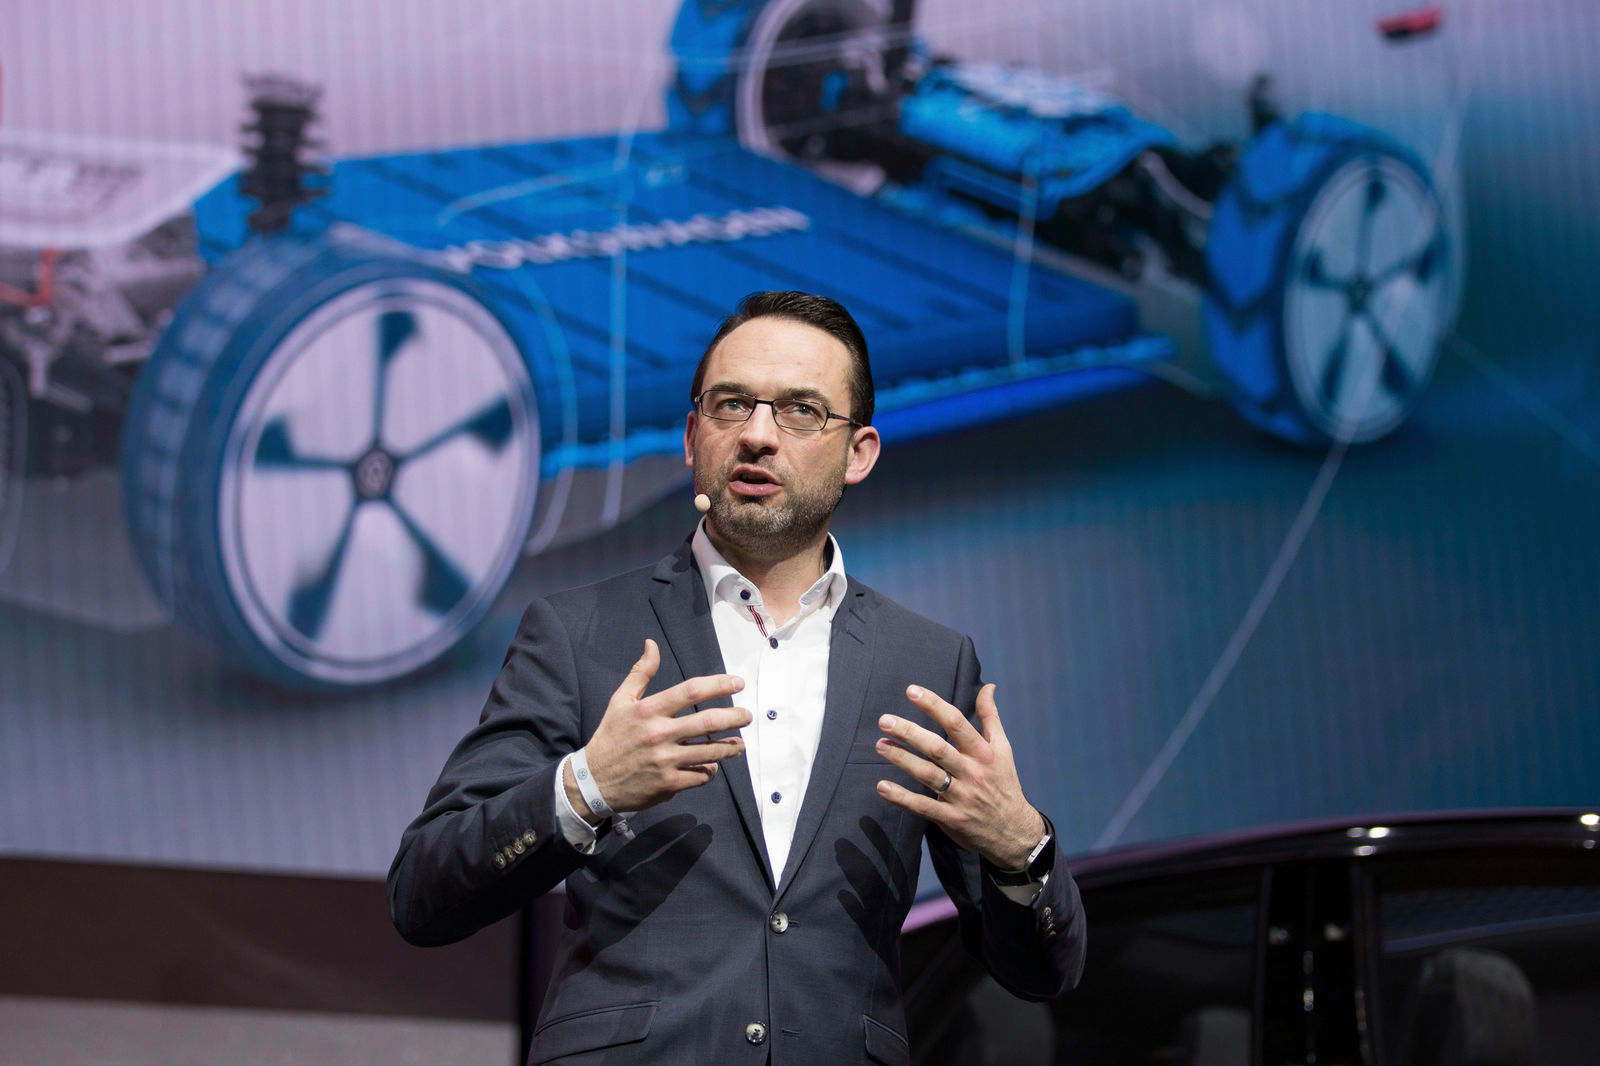 Christian Senger, Head of Volkswagen Product Line e-Mobility